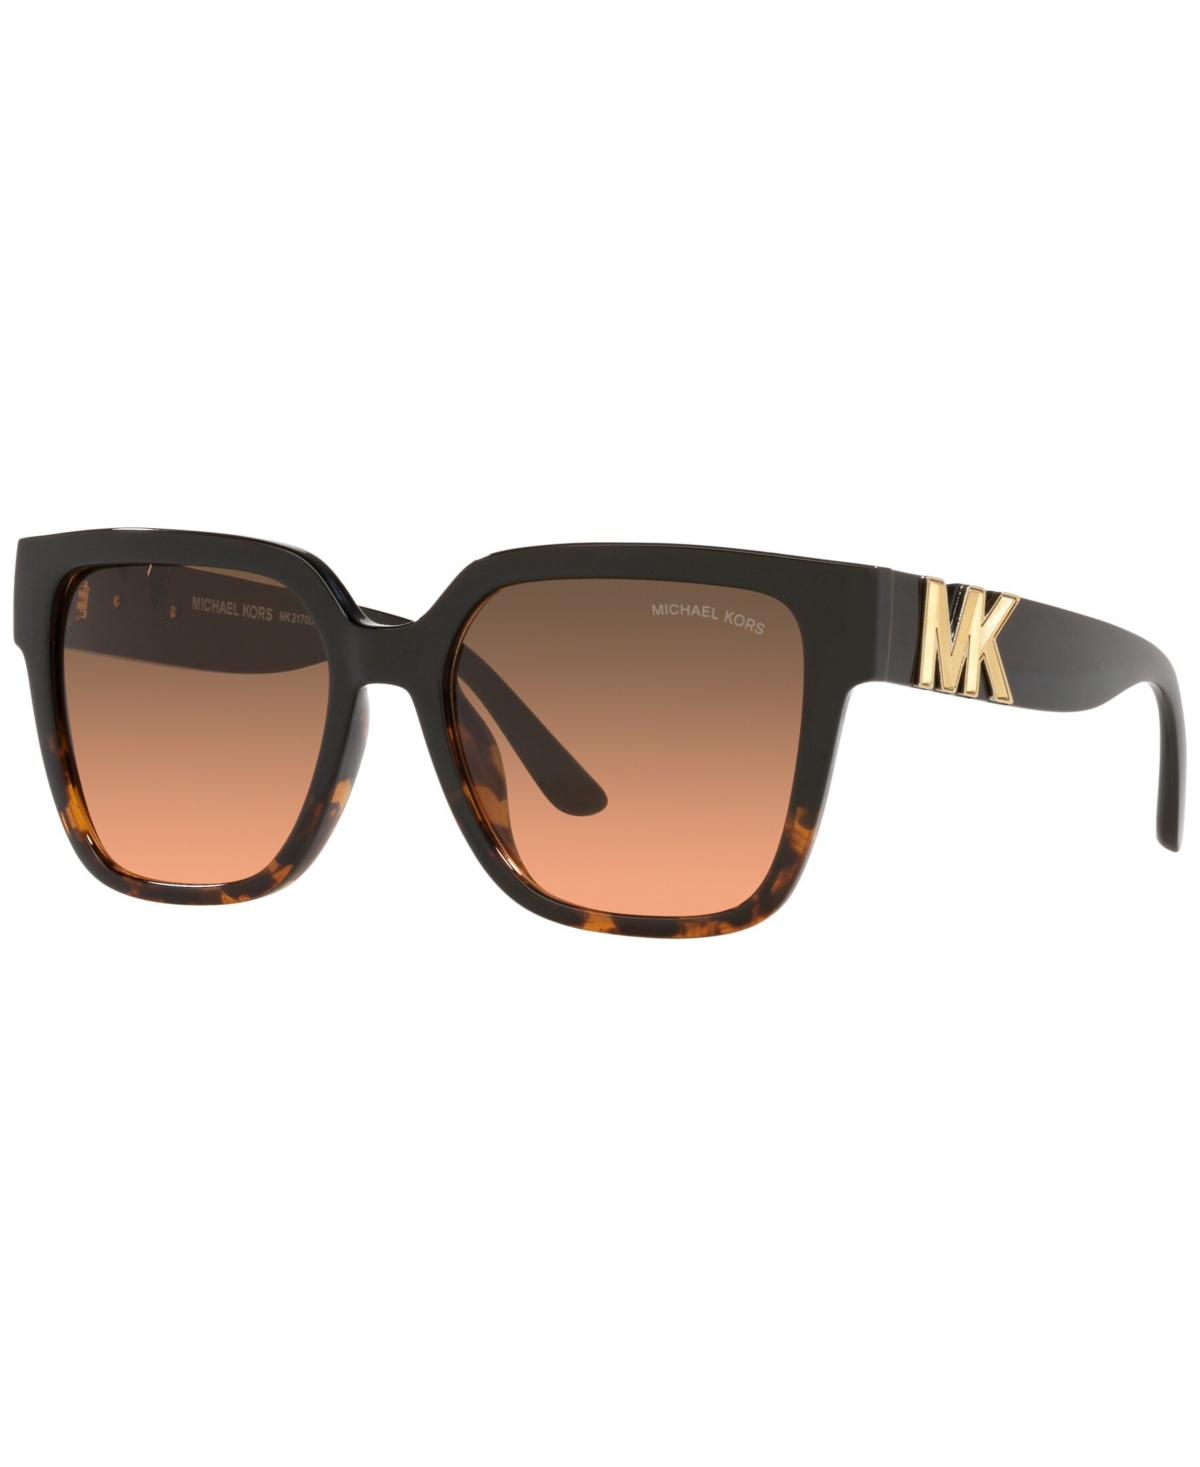 Michael Kors Women's Sunglasses, Karlie Mk2170 In Black,dark Tortoise